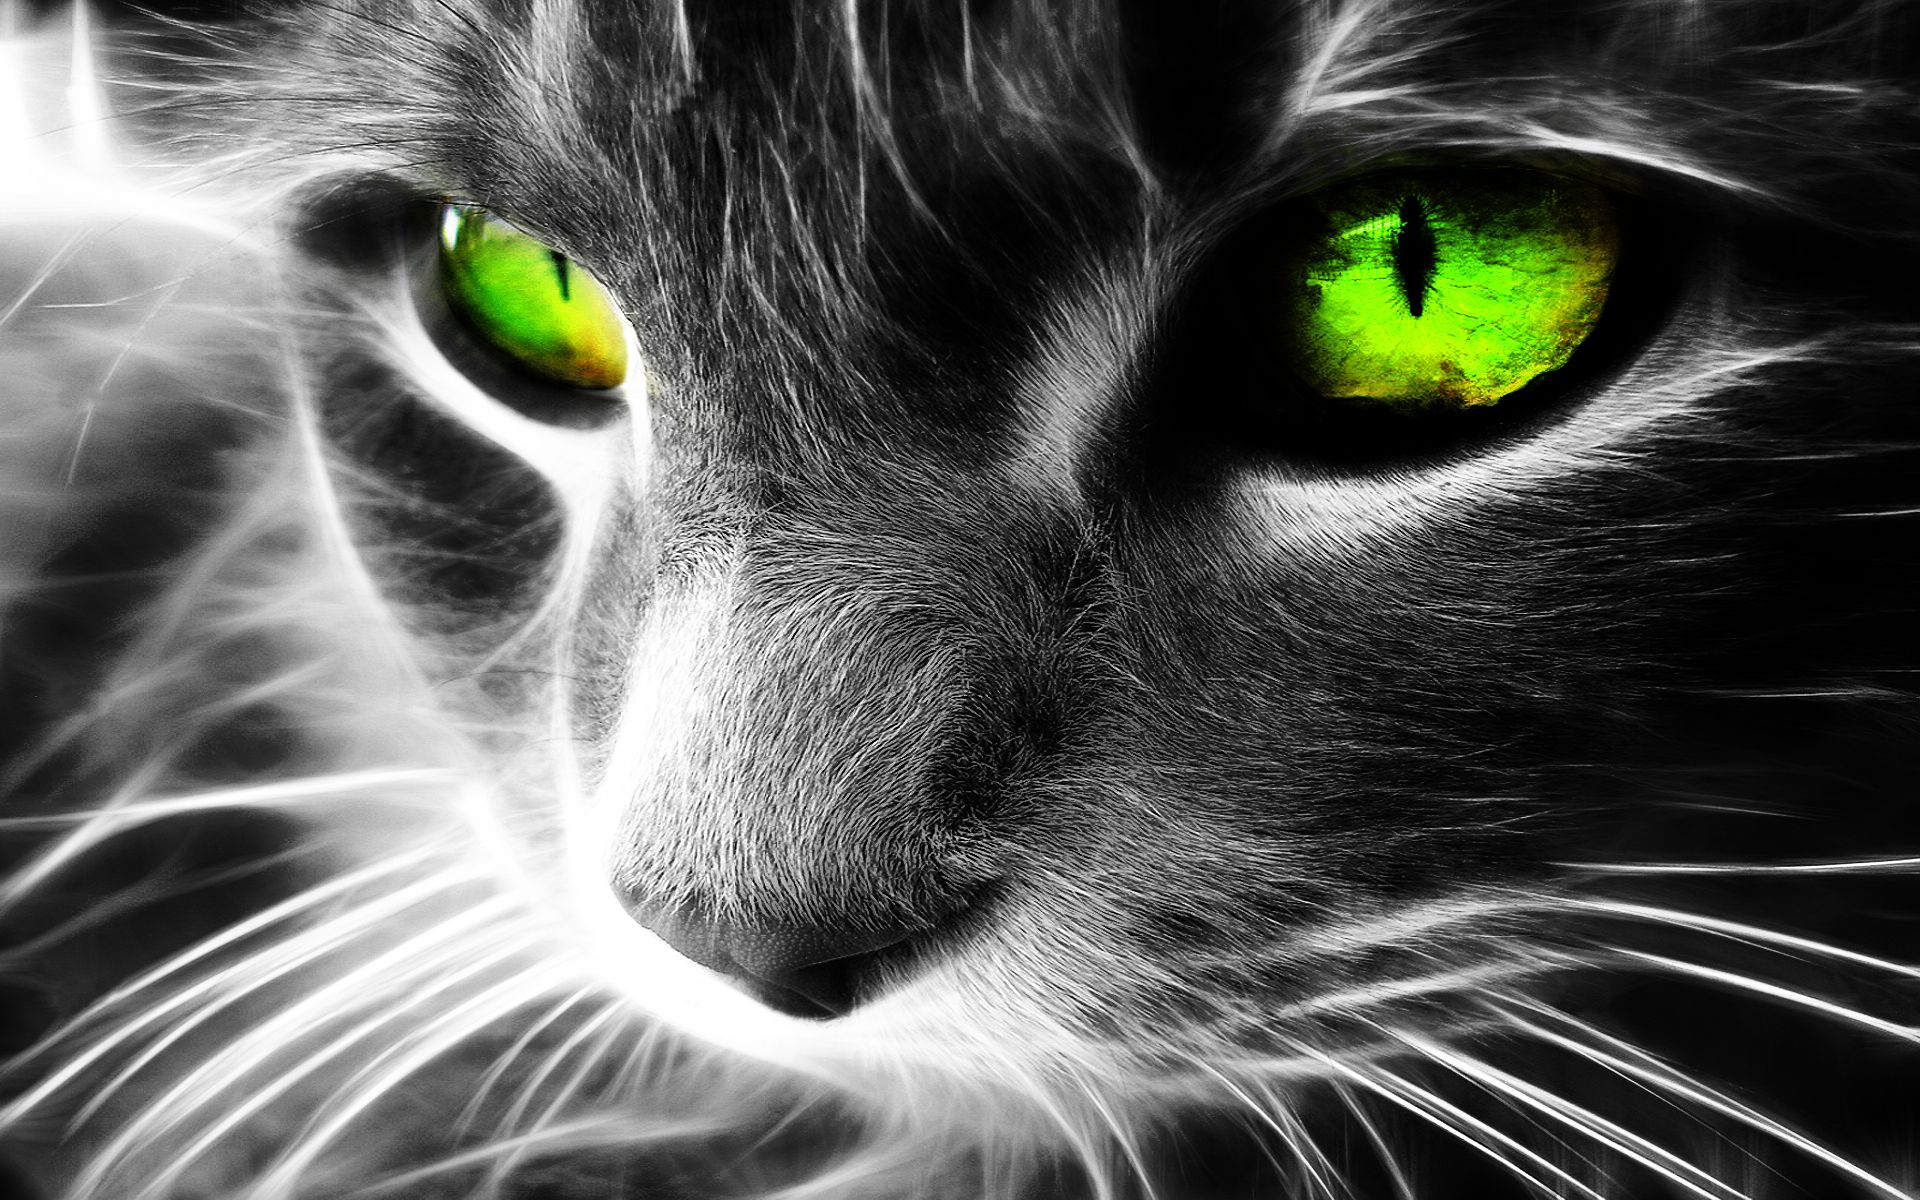 Femelle noire aux yeux verts